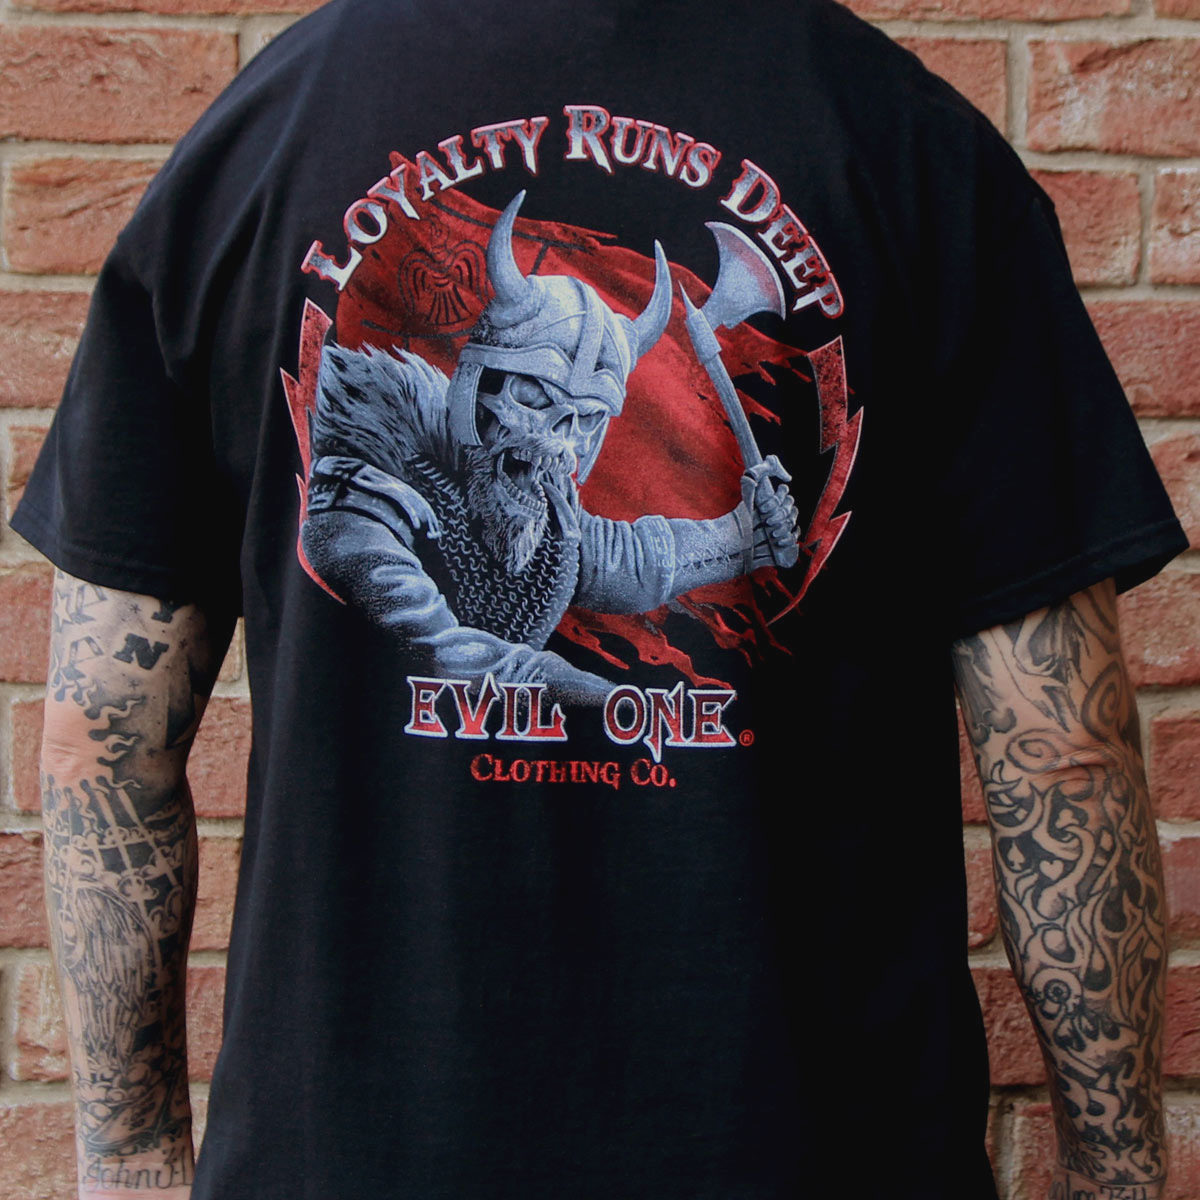 Viking “Loyalty Runs Deep” Men’s Tee Shirts Graphic